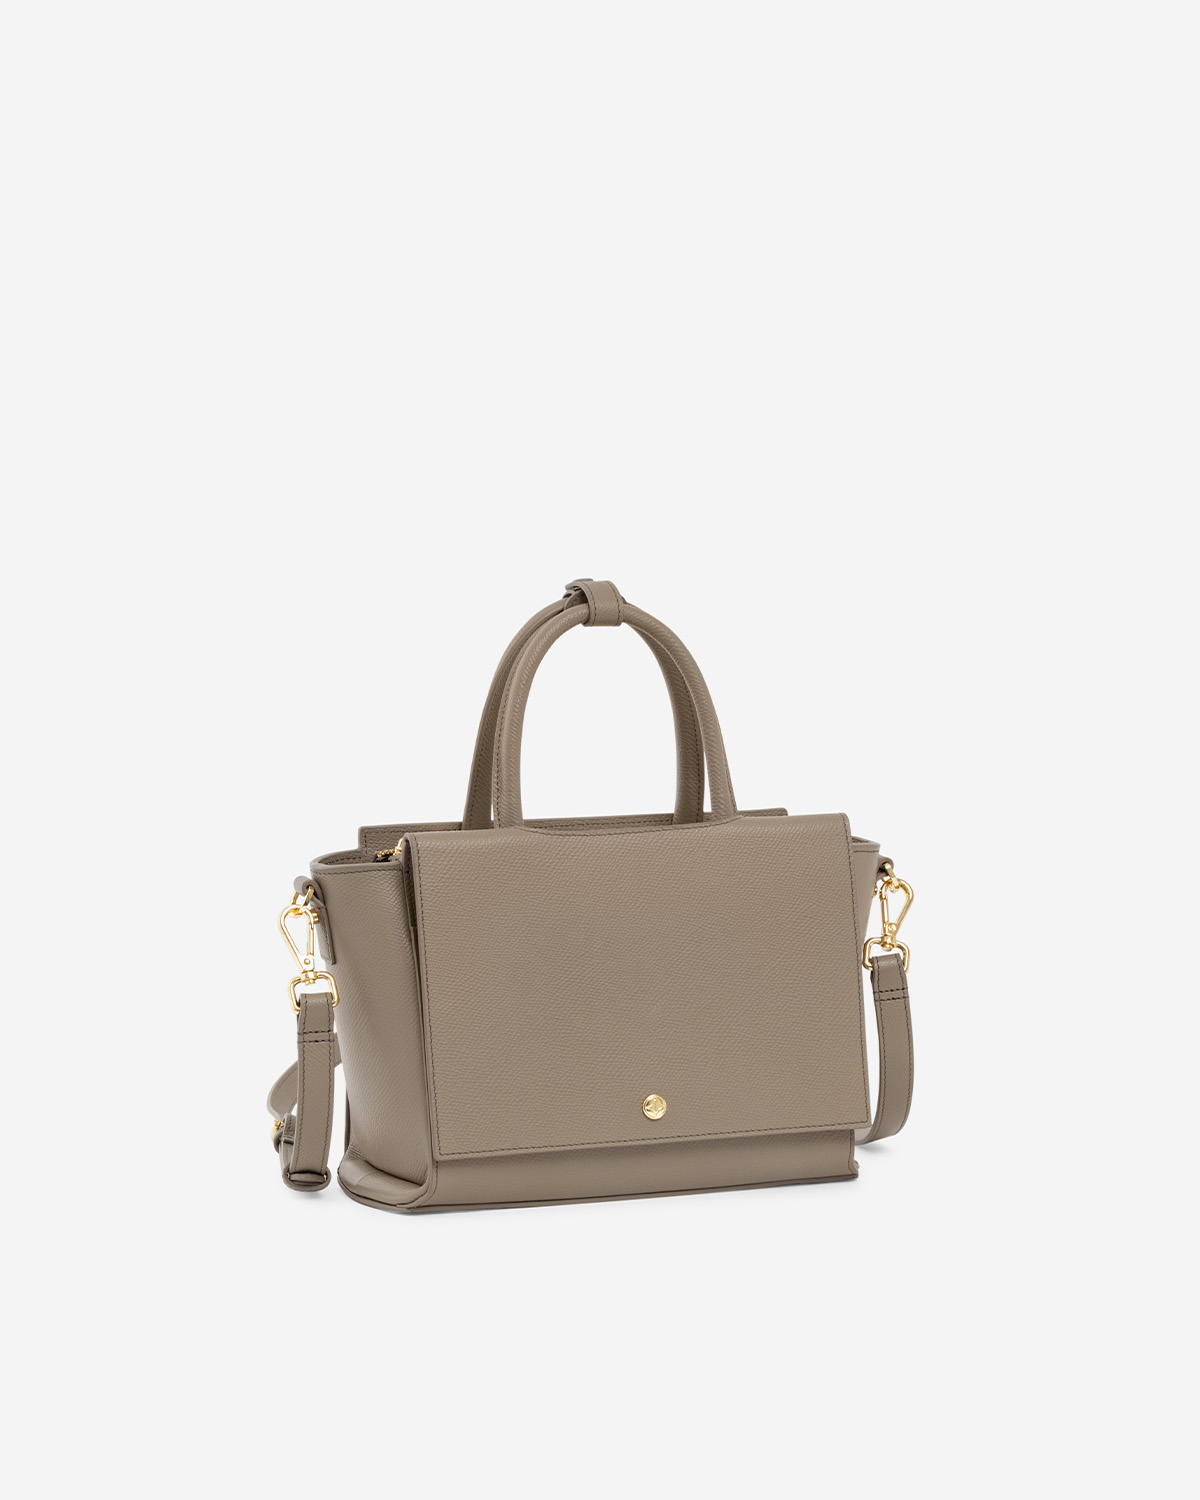 กระเป๋าถือหนังแท้ VERA Heidi Leather Handbag, ไซส์ 25 สี Taupe